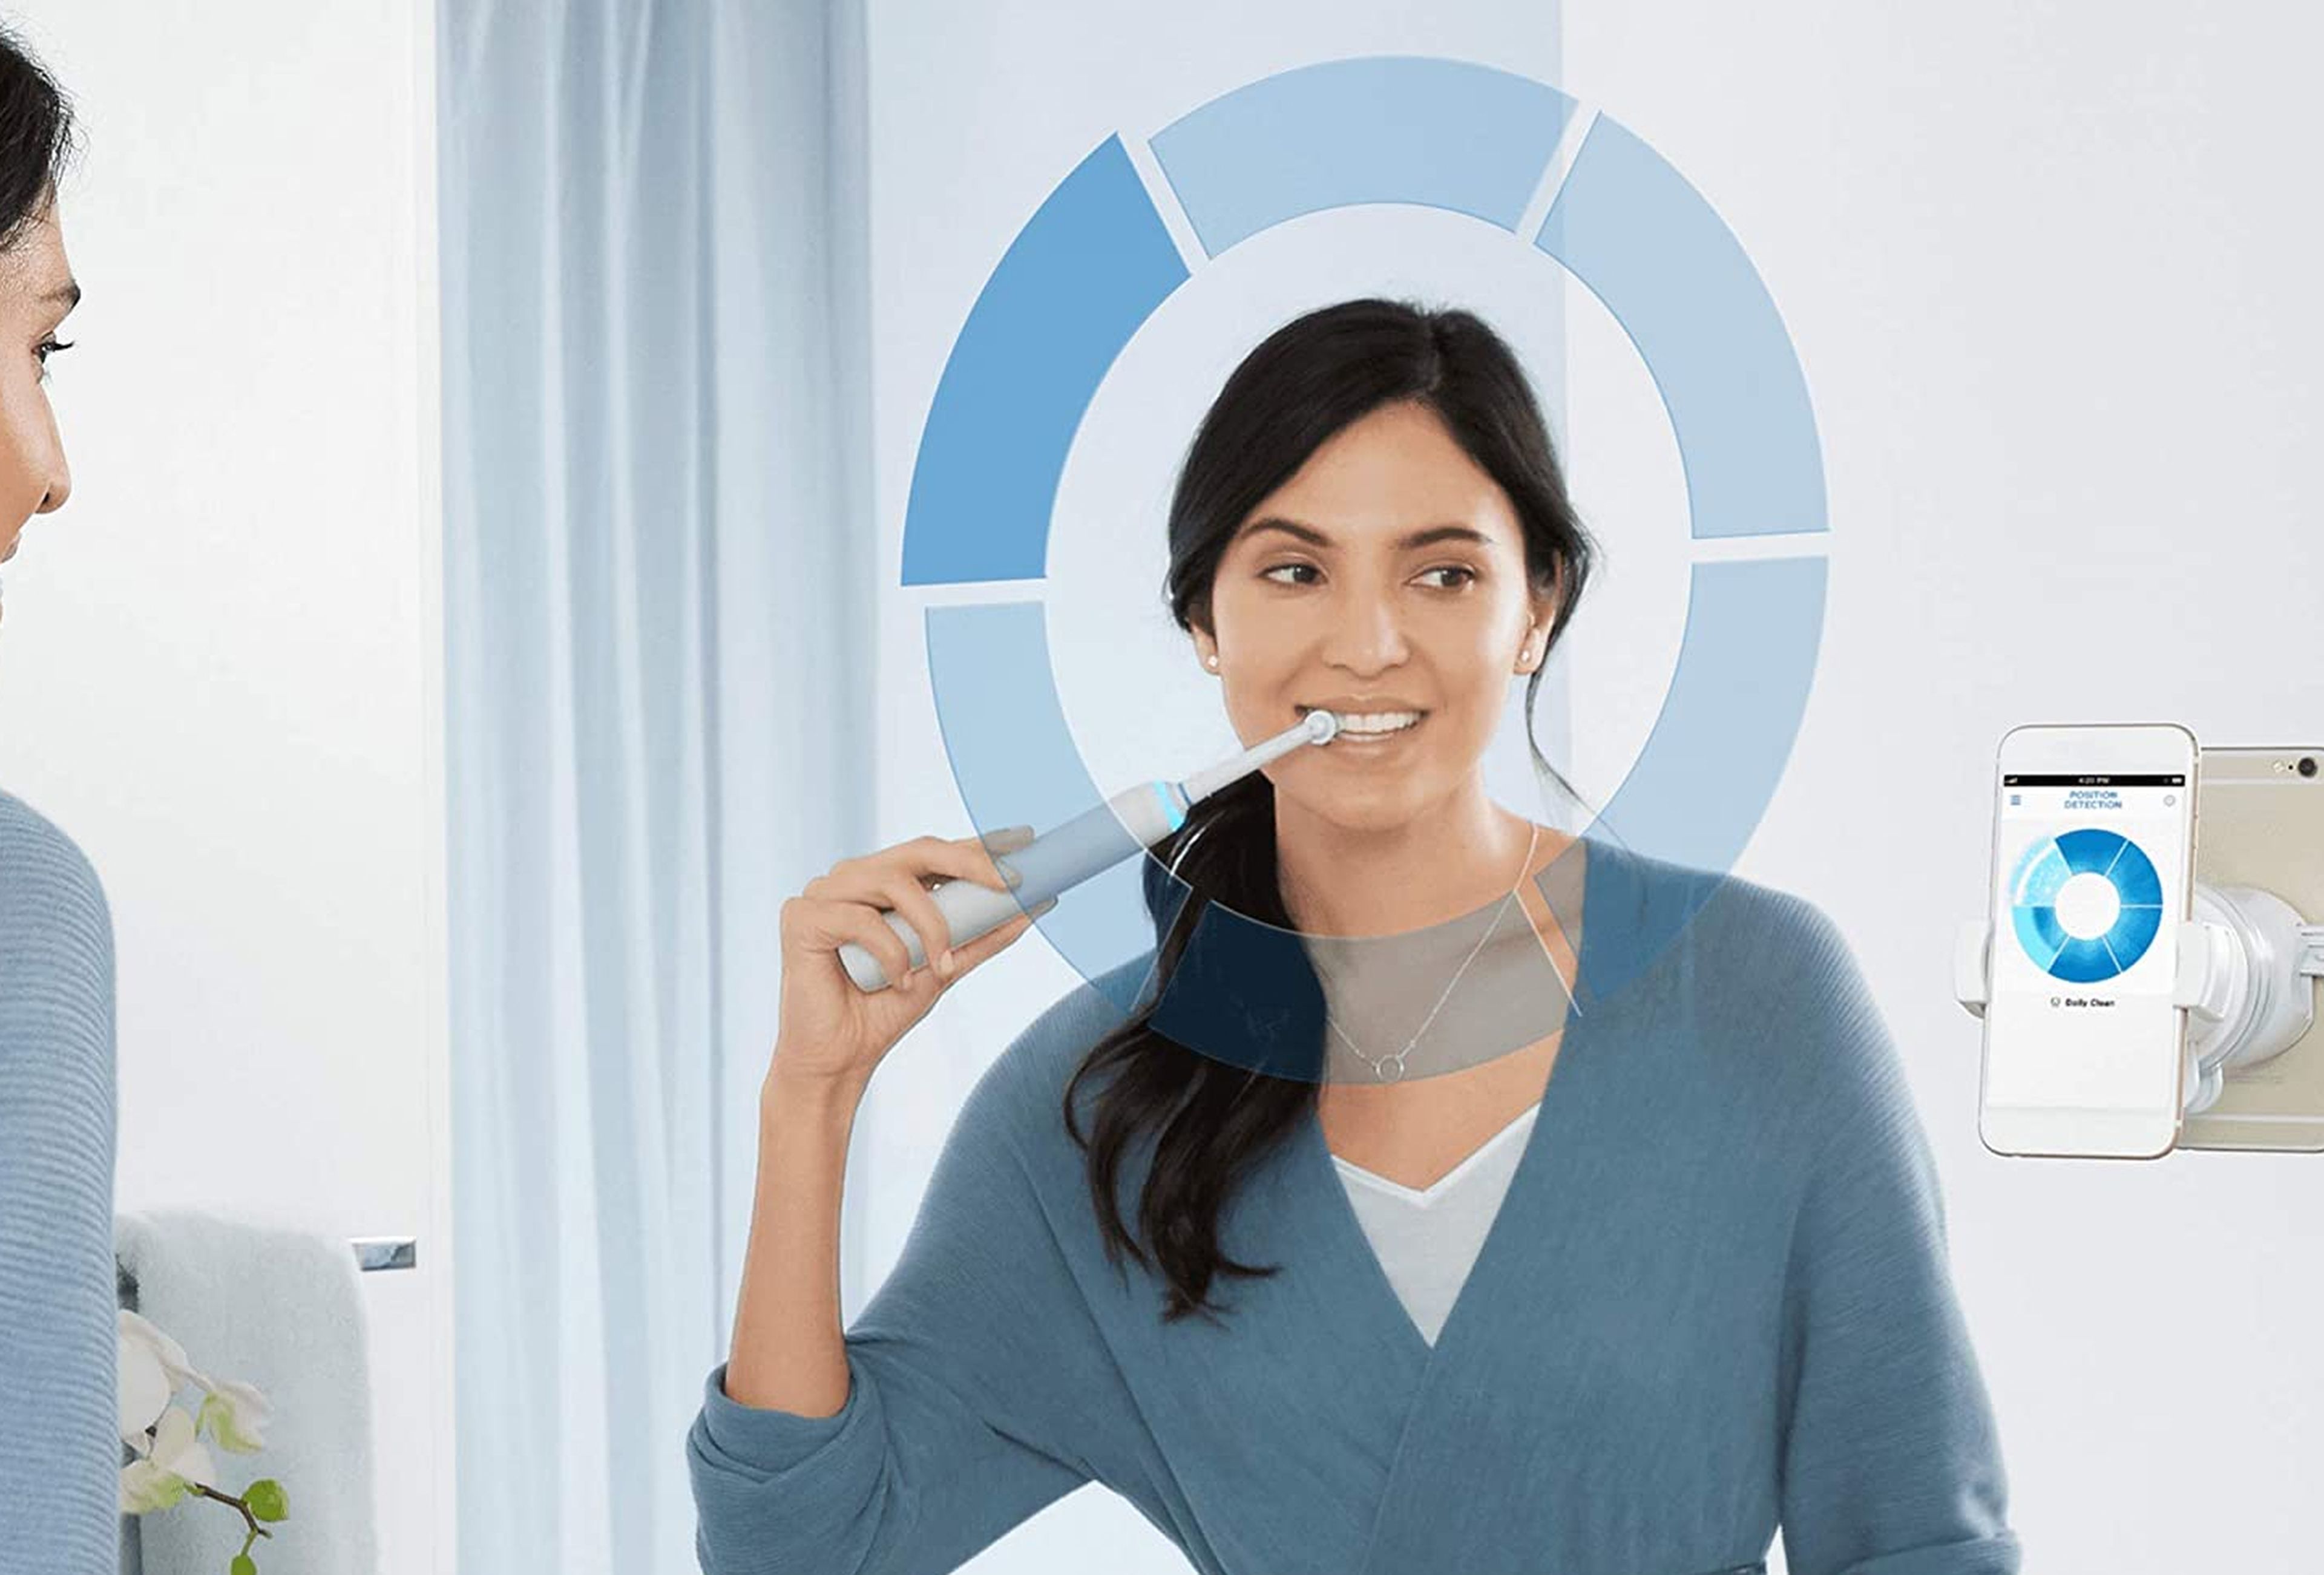 Oferta: cepillo eléctrico Oral-B Genius 800N por 90 euros